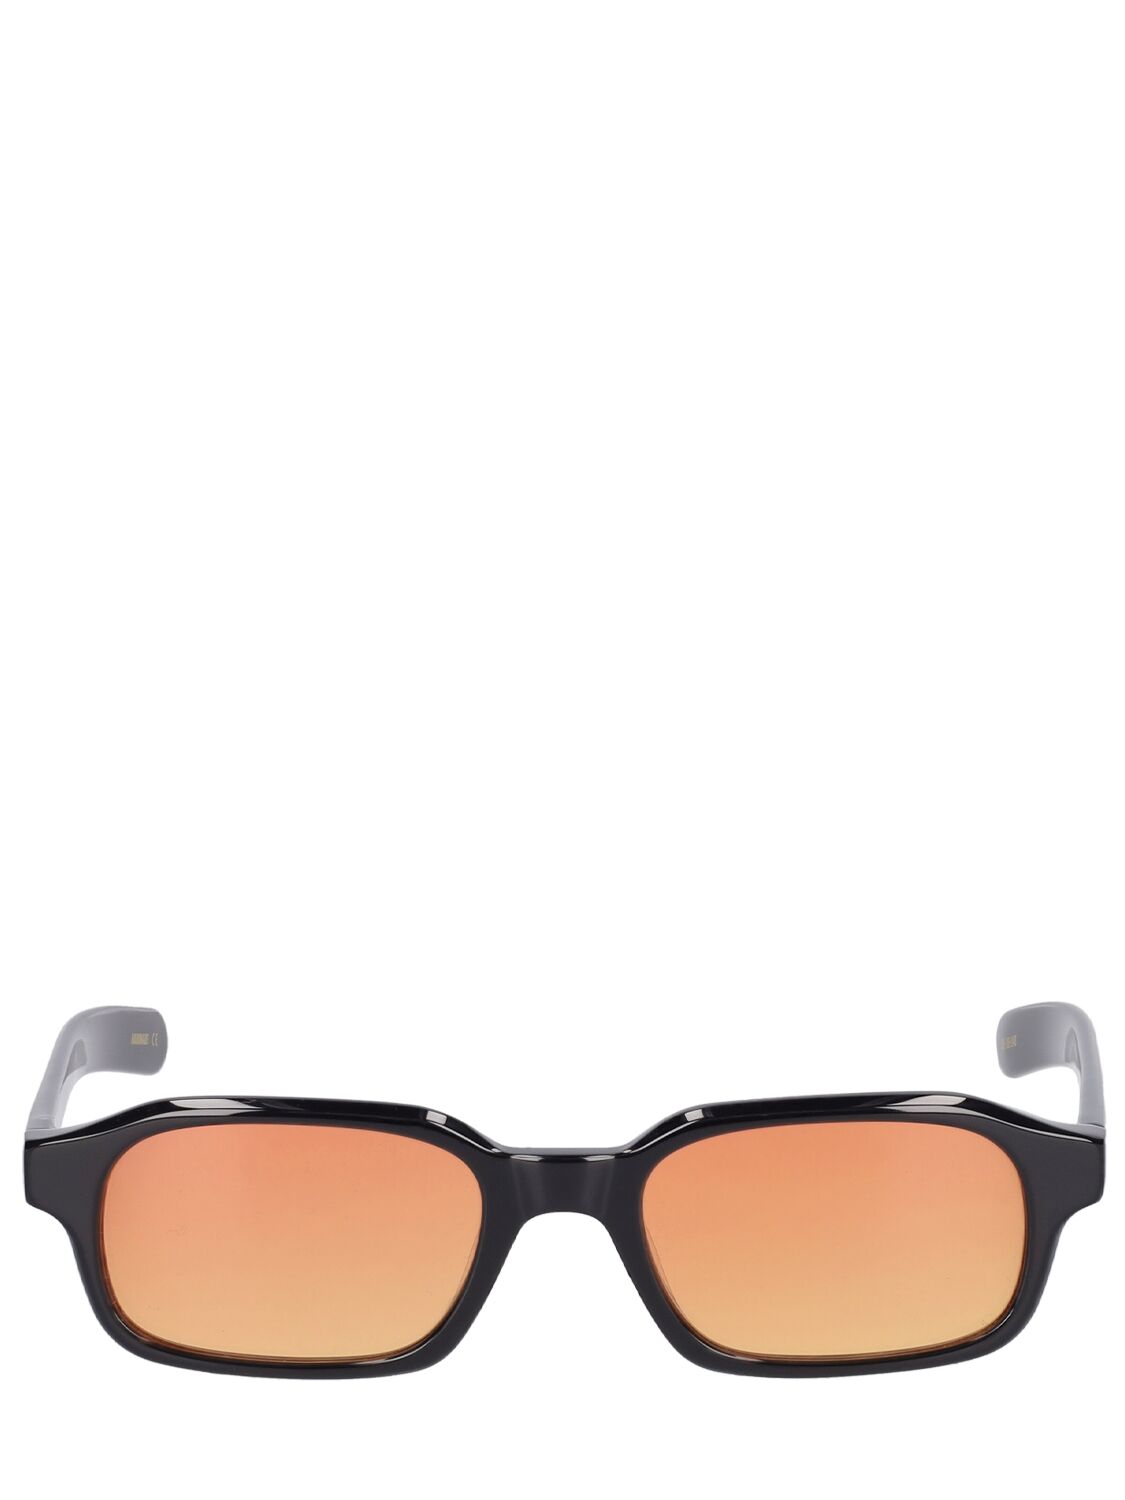 Flatlist Eyewear Office Hanky Sunglasses In Black